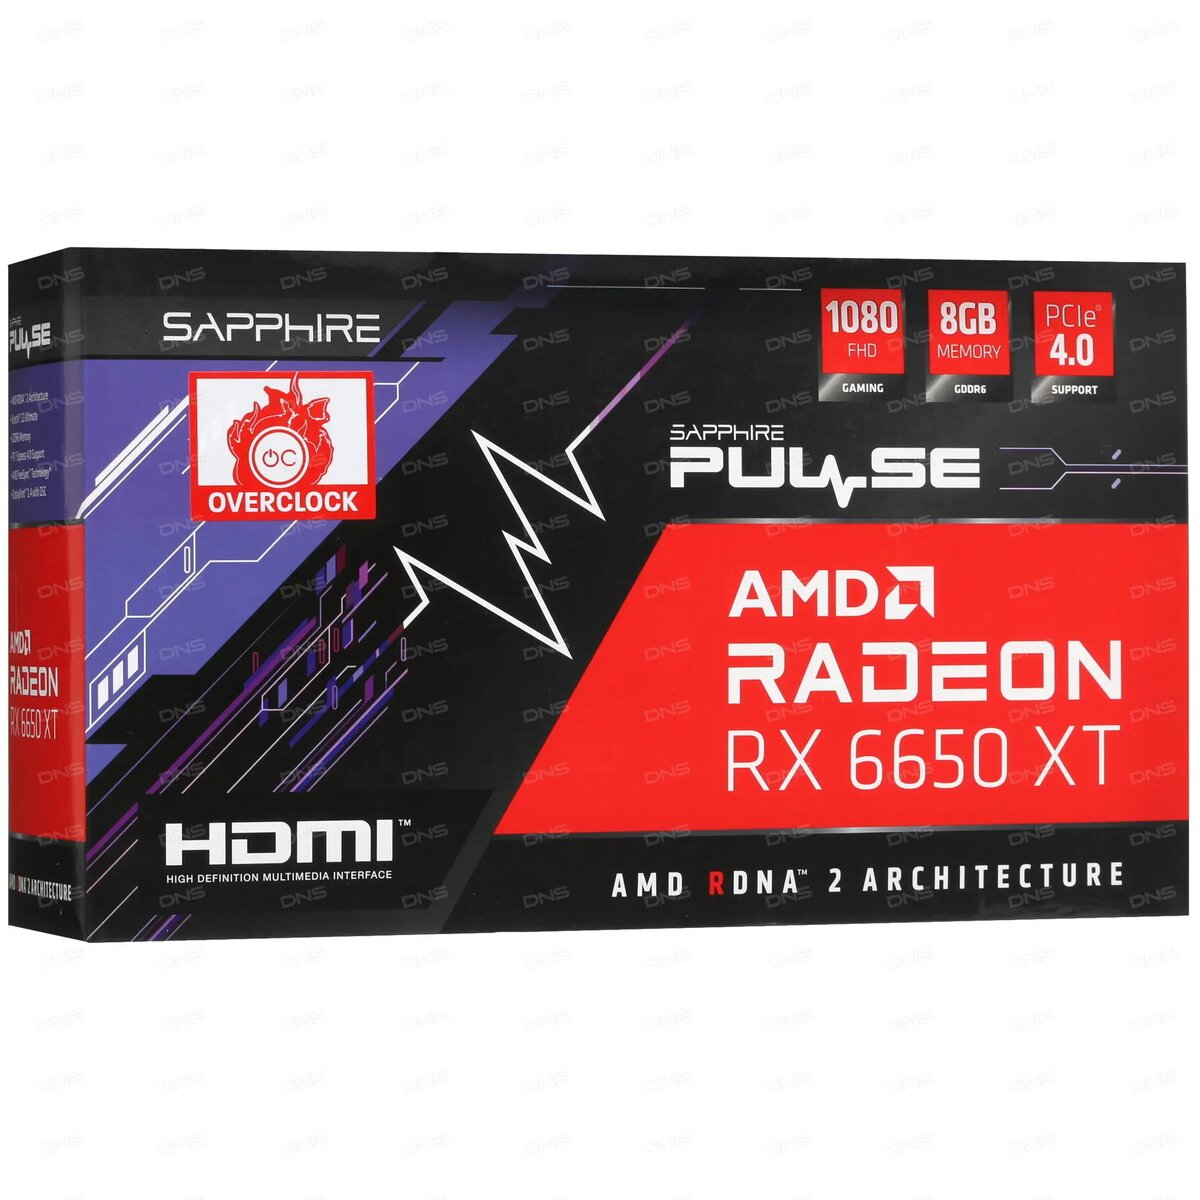 Описание Видеокарта  Sapphire AMD Radeon RX 6650 XT PULSE GAMING способна обеспечить высокую  частоту кадров и реалистичность графики с плавностью отображения  динамичных сцен в играх с разрешением...